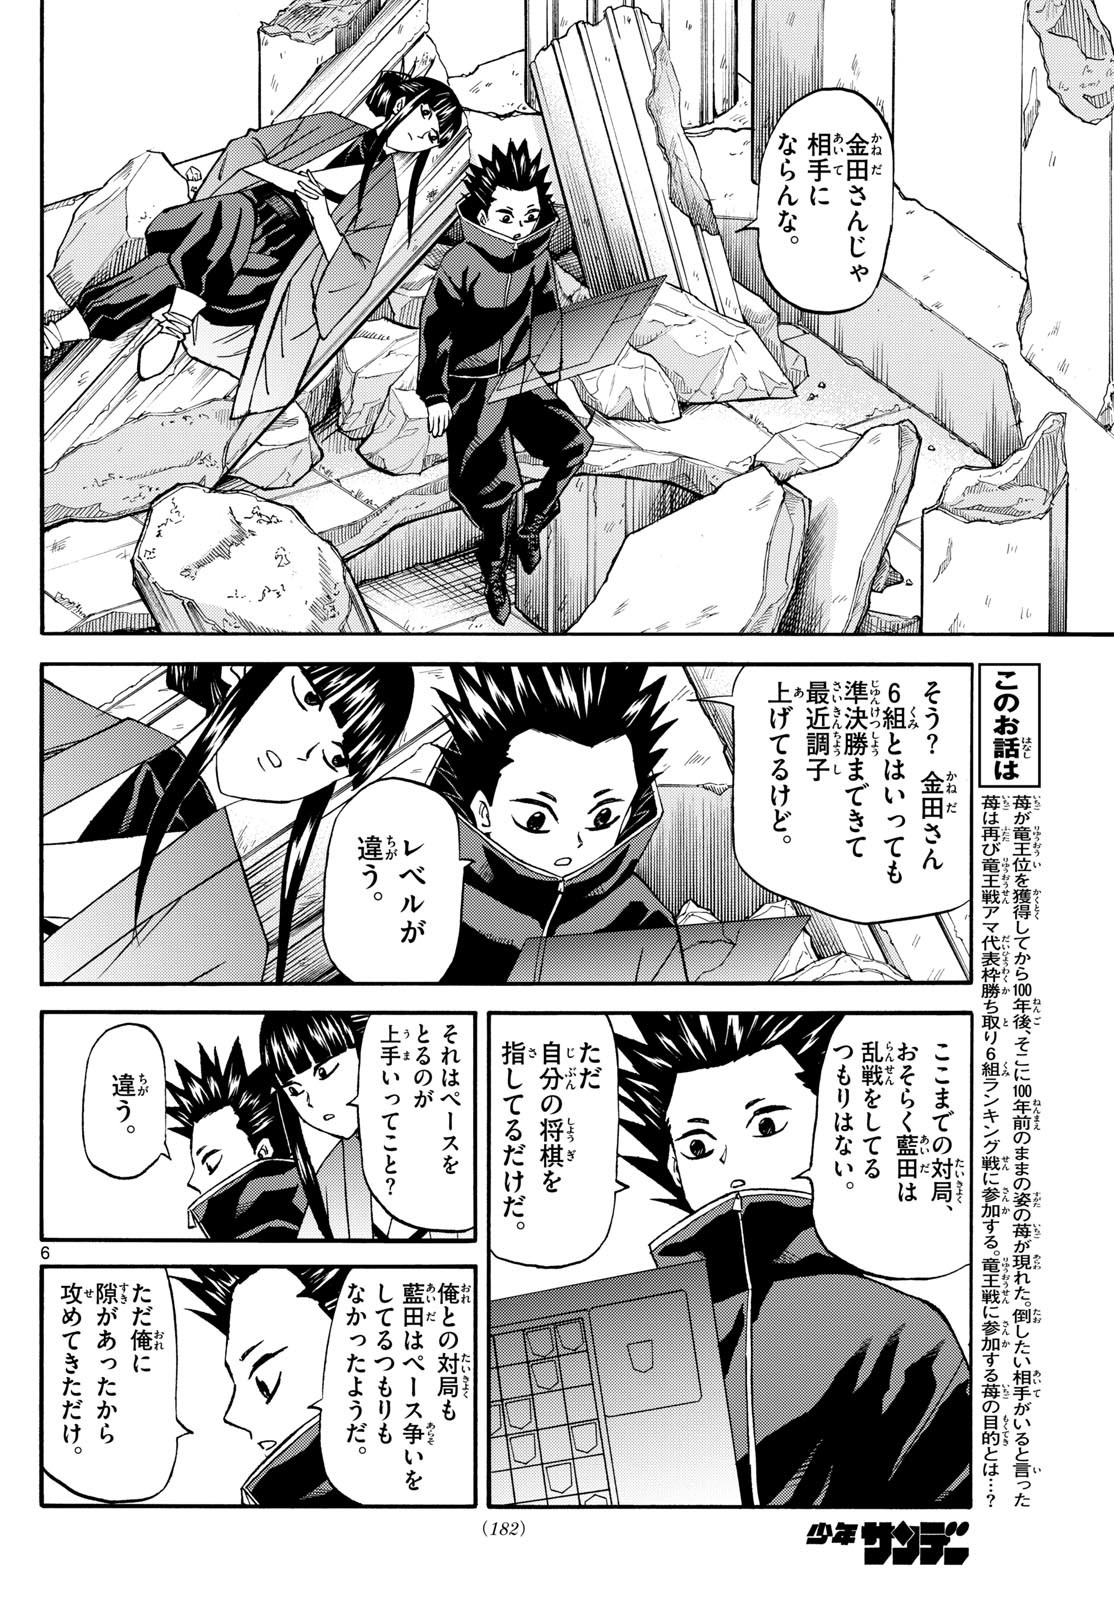 Ryu-to-Ichigo - Chapter 192 - Page 6